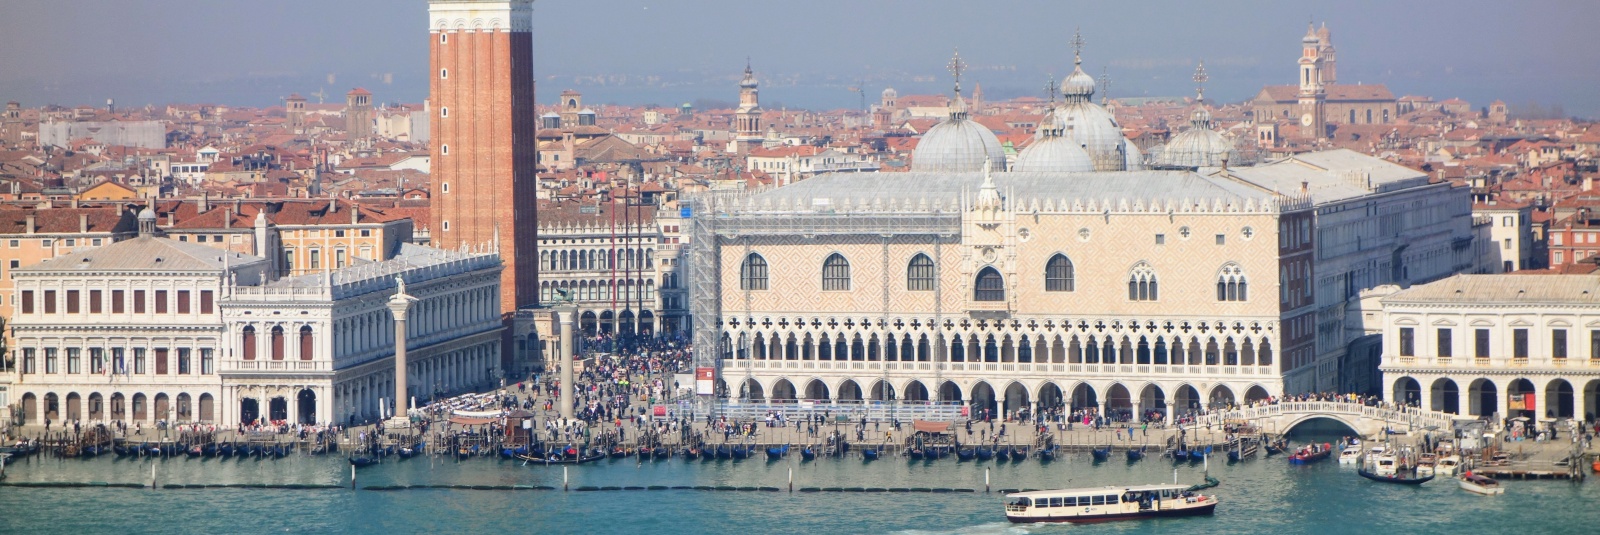 Palatul Dogilor din Veneția (preț bilete și program)